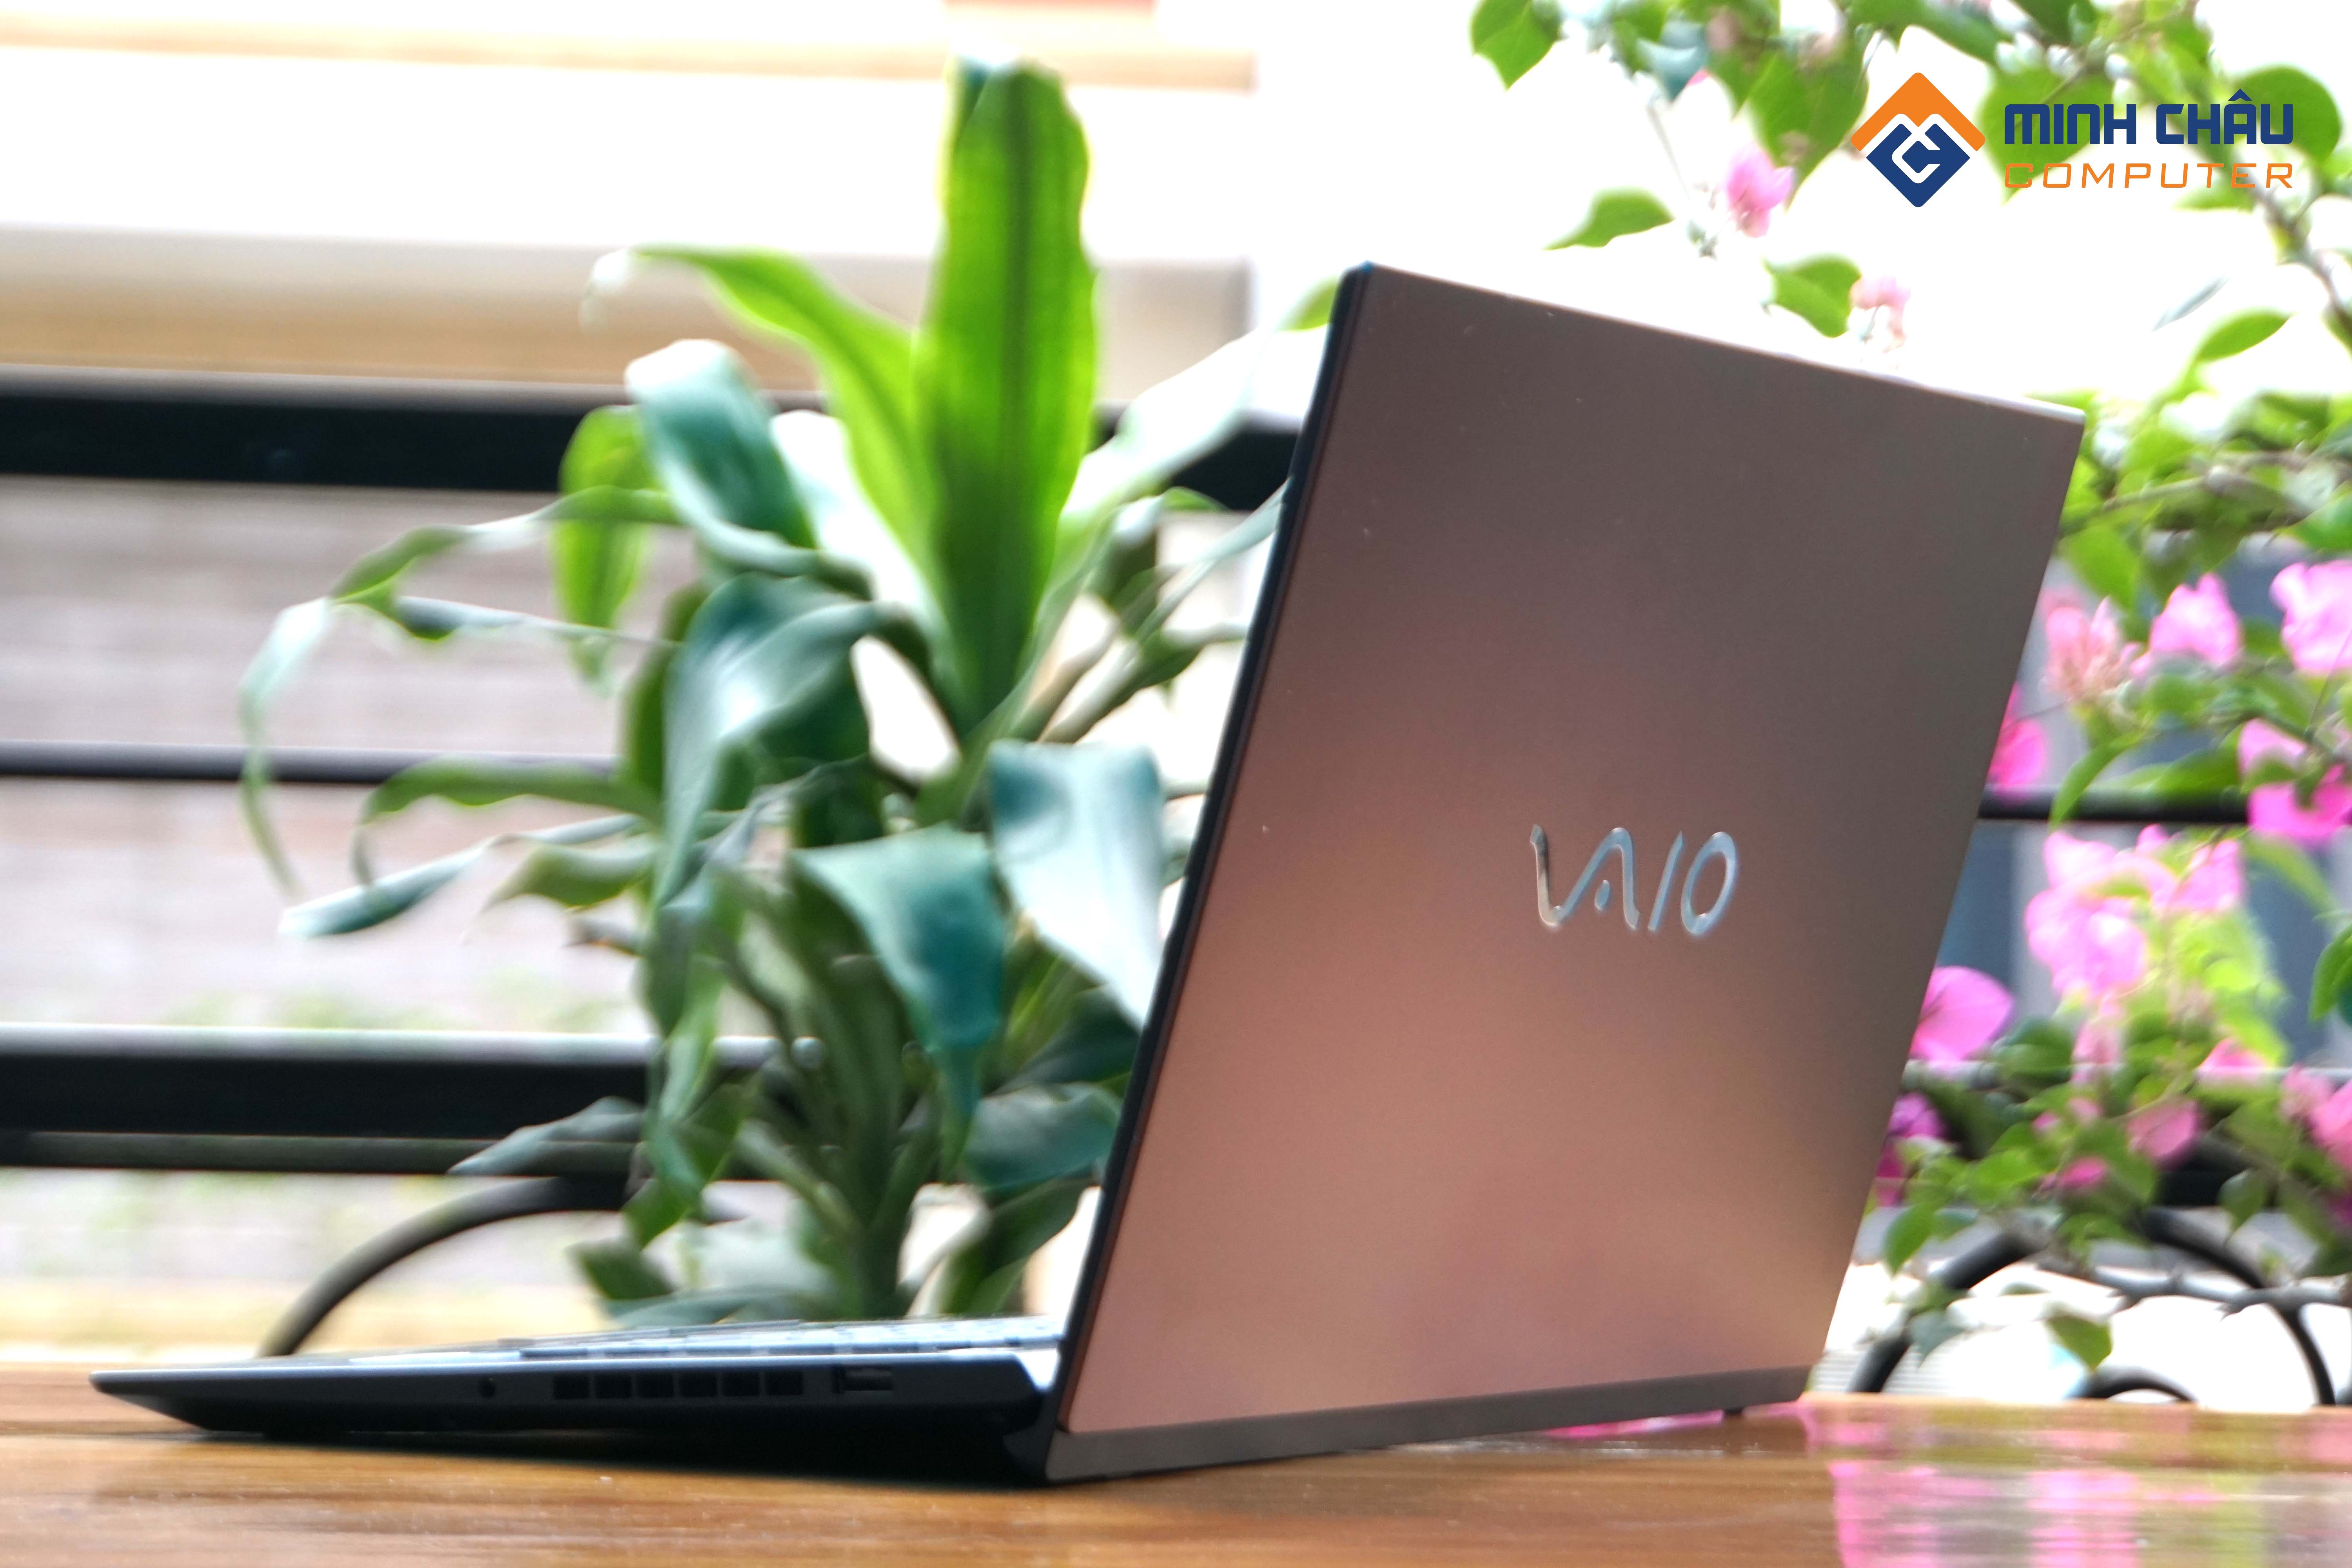 Sự trở lại của Laptop thương hiệu Laptop VAIO 